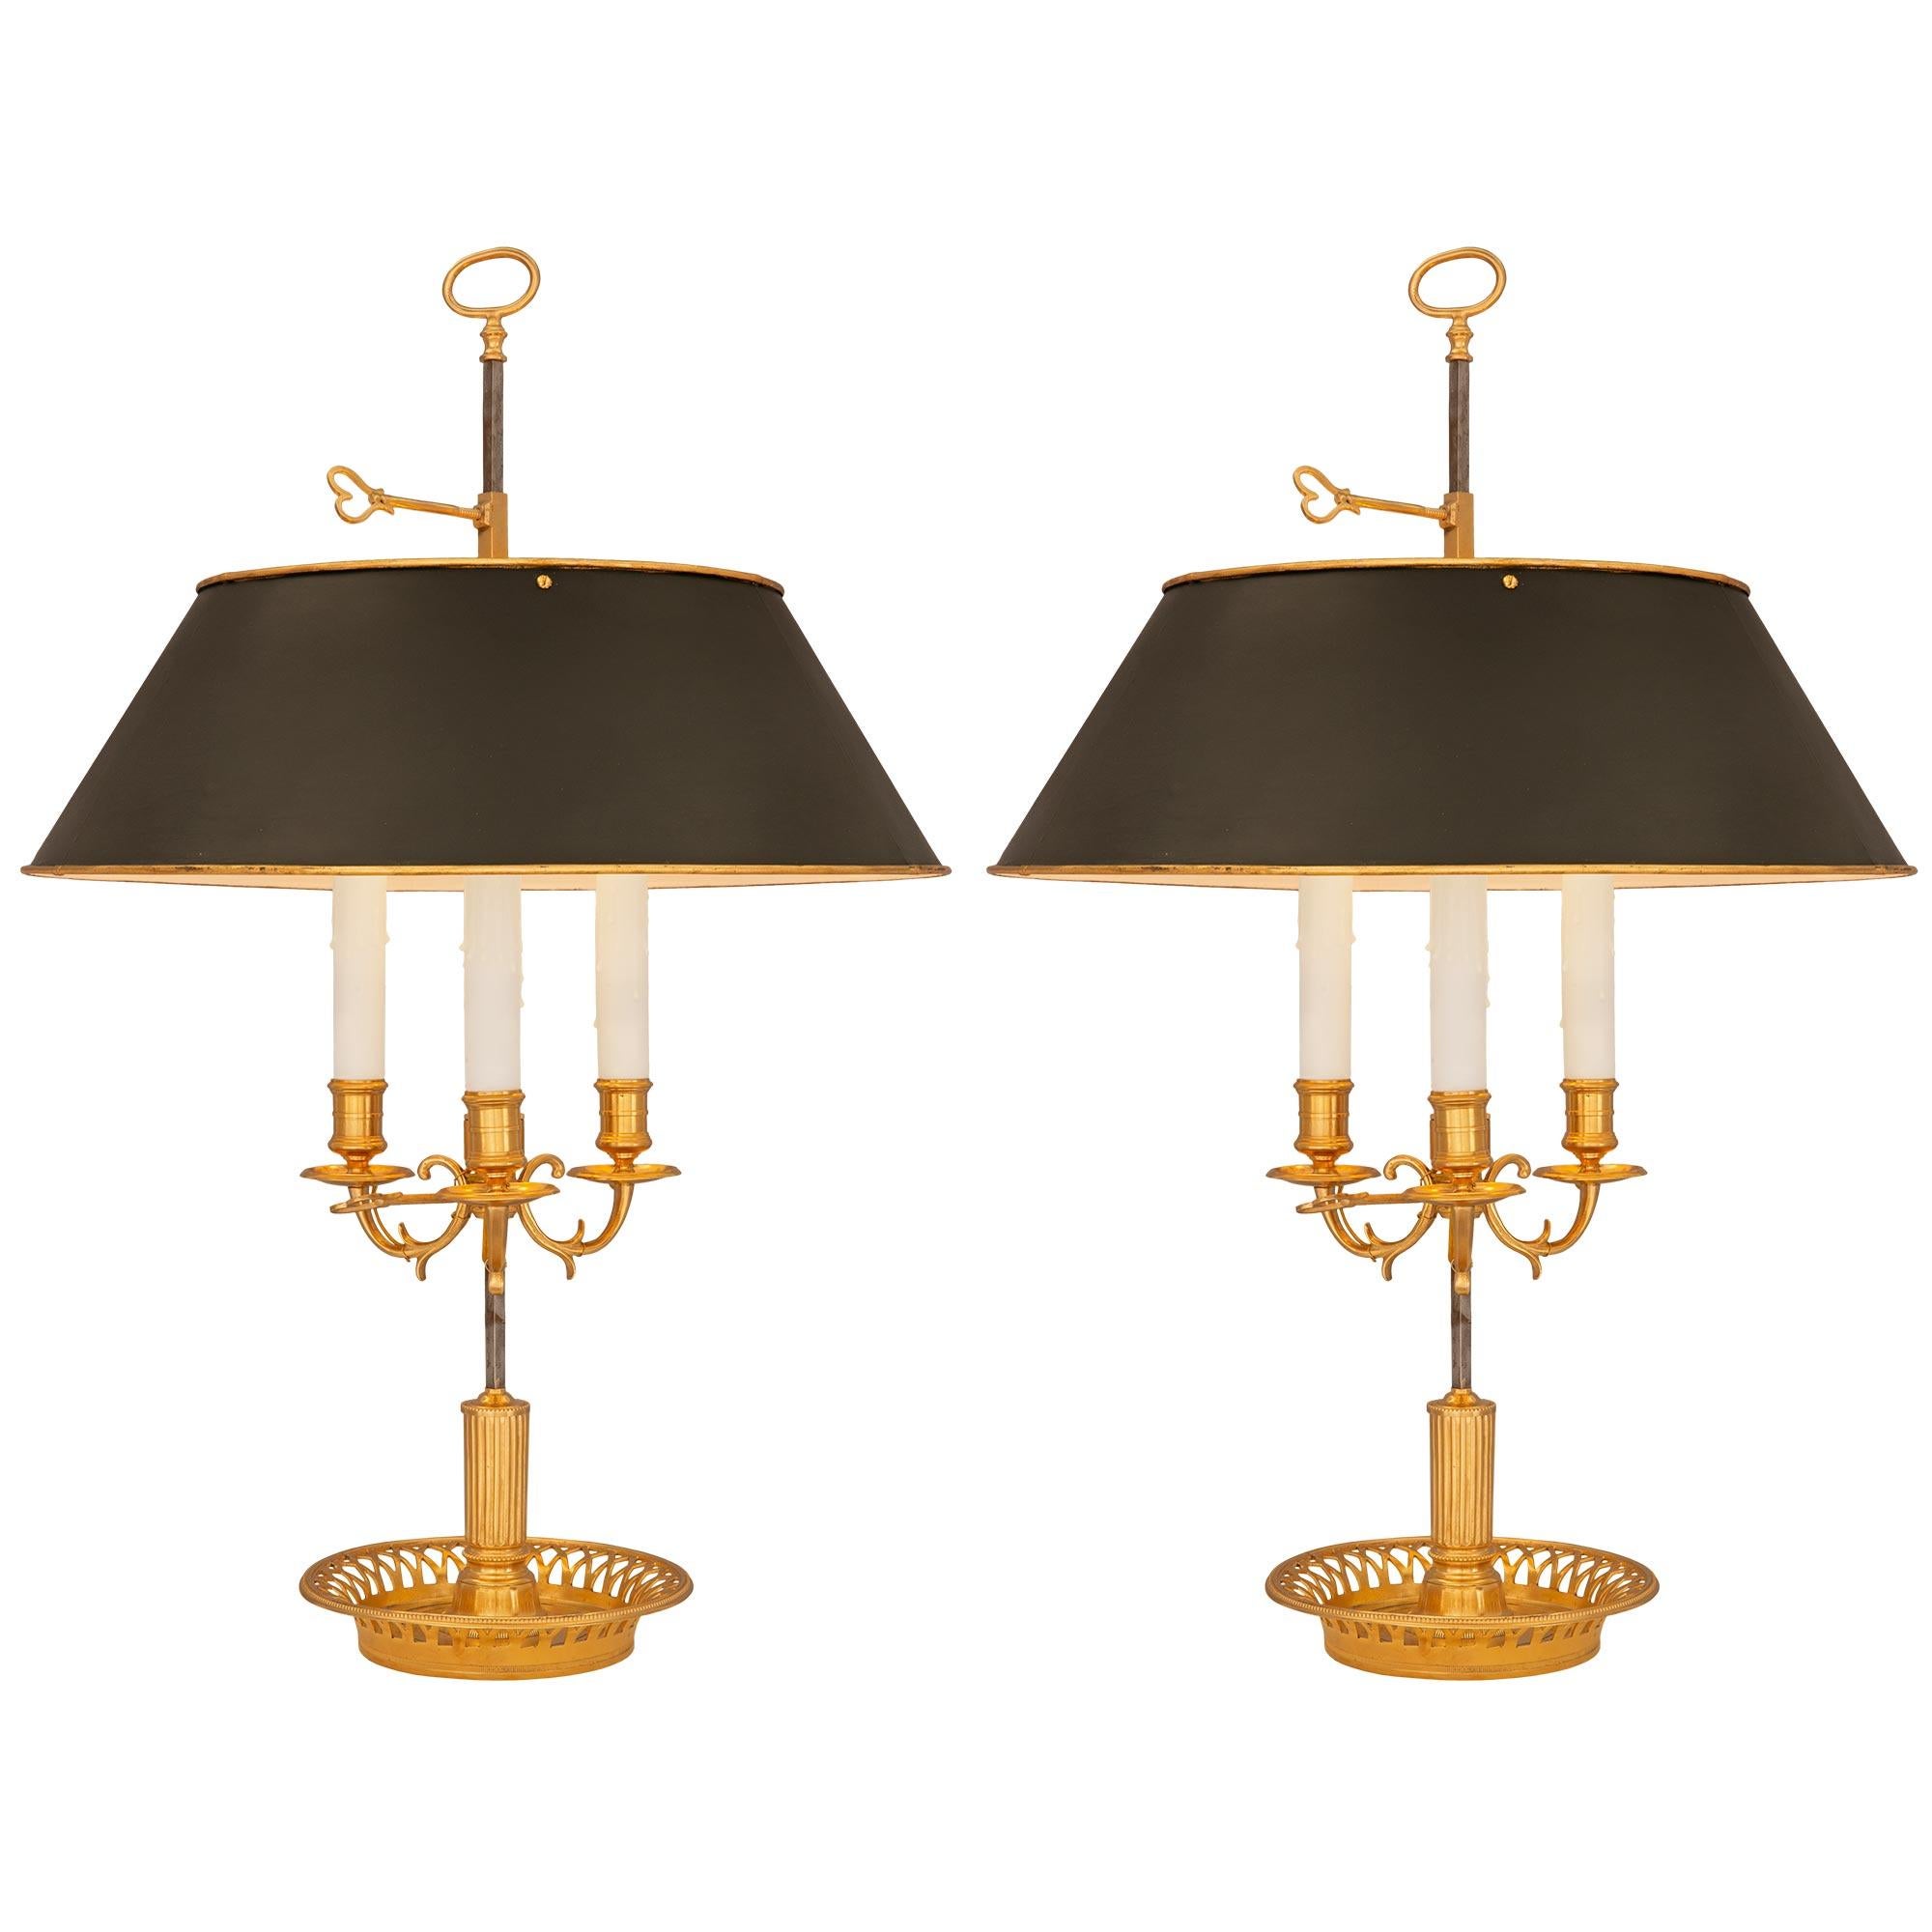 Une paire très élégante de lampes bouillotte en bronze doré de style Louis XVI du 19ème siècle. Chaque lampe est surélevée par une belle coupe circulaire percée de jolis motifs feuillus et d'une bande perlée. Au centre, des supports cannelés mènent